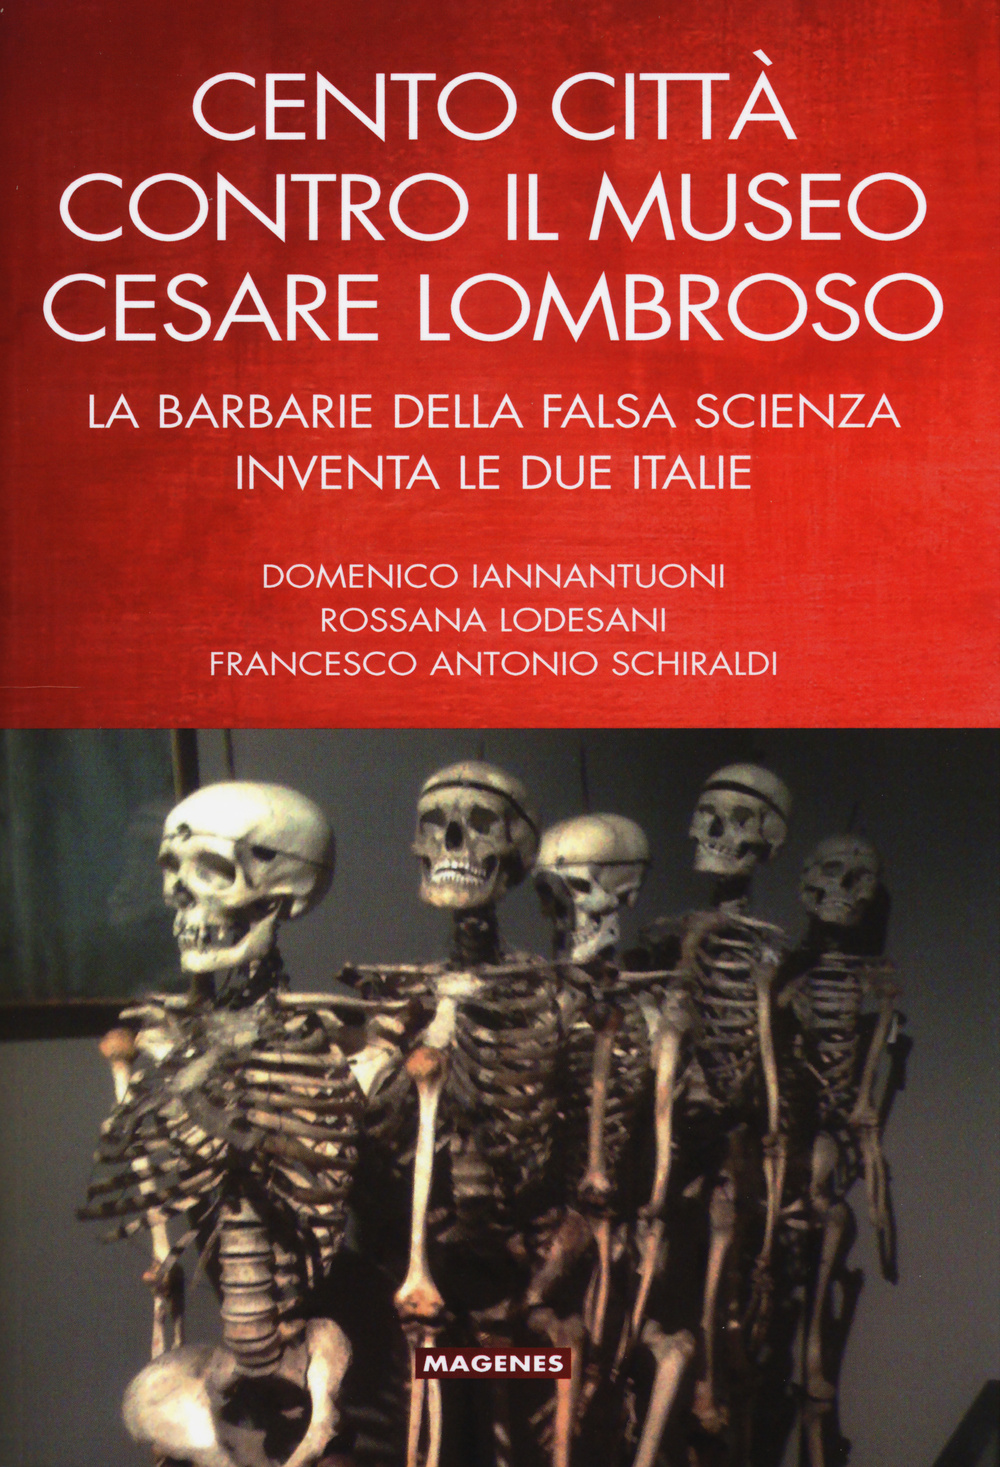 Cento città contro il museo Cesare Lombroso. La barbarie della falsa scienza inventa le due italie